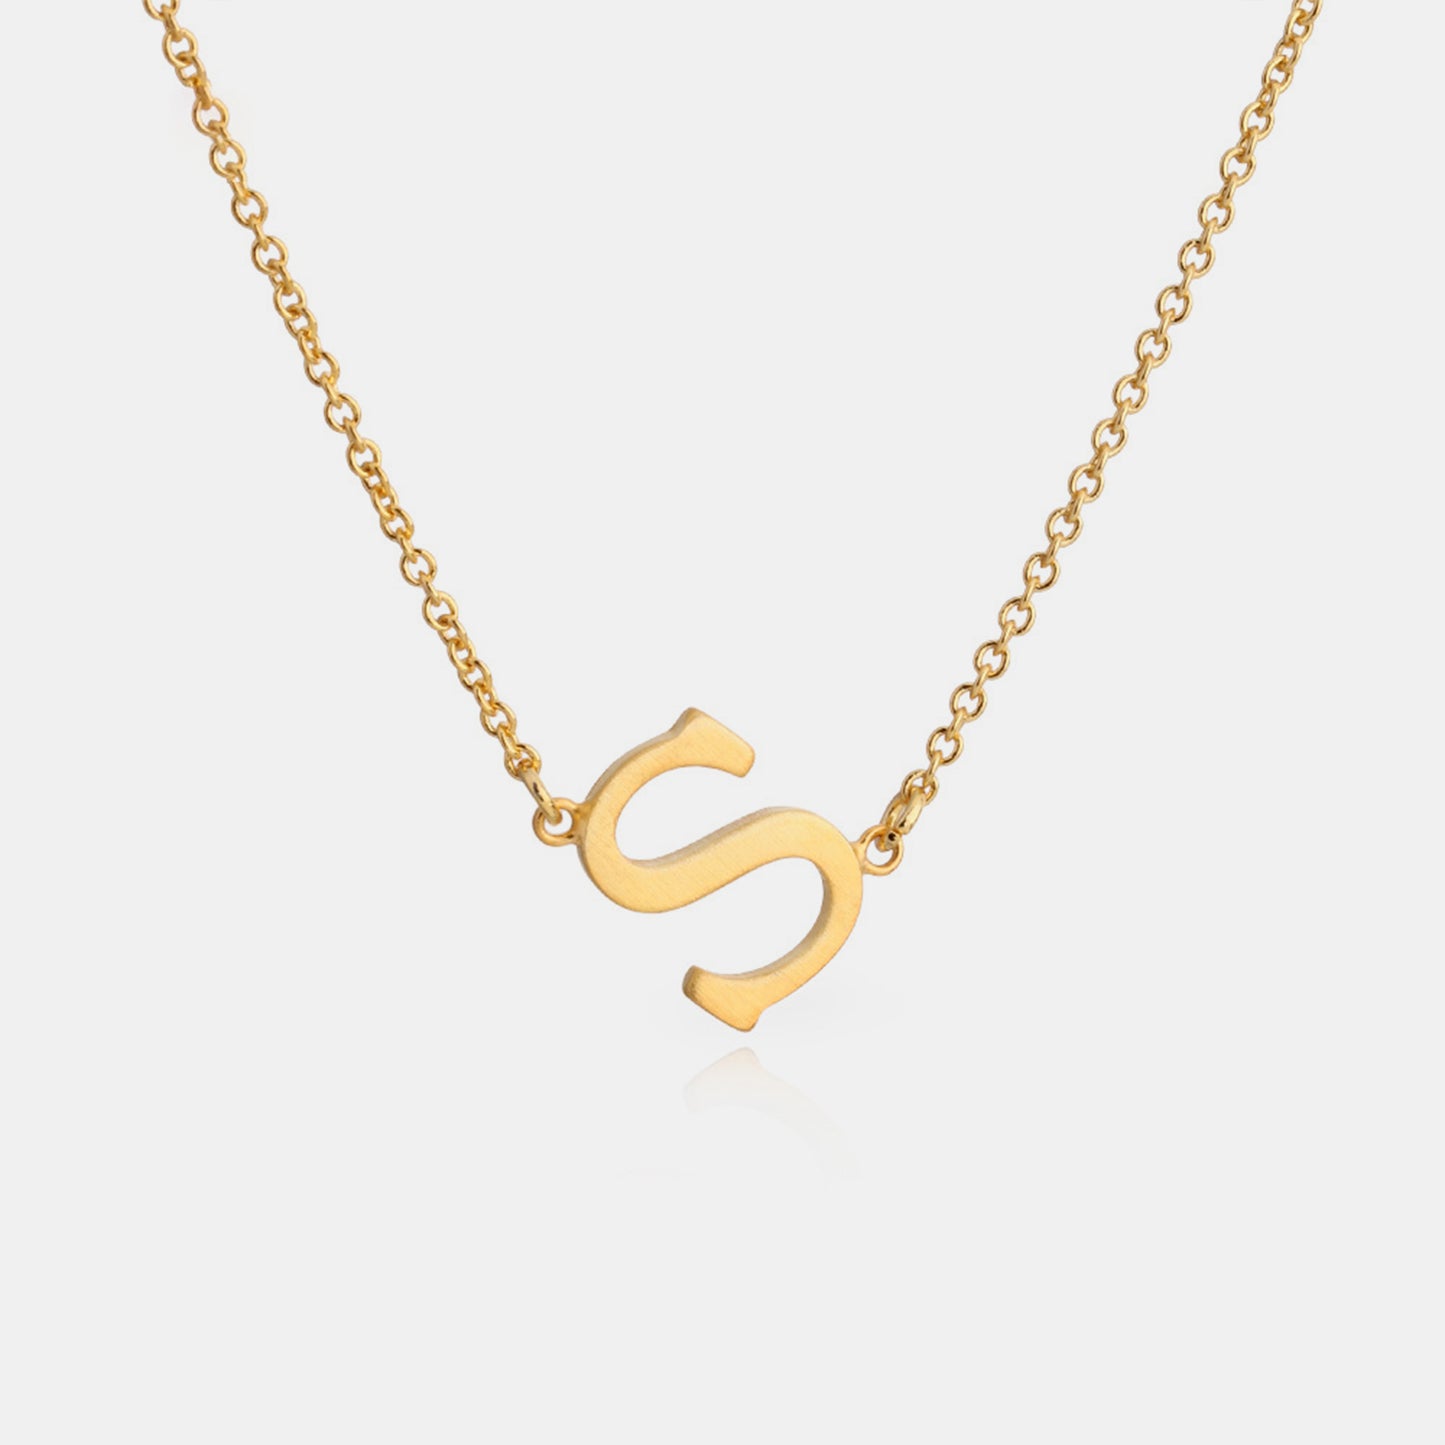 Elegant Copper Necklace featuring Letter Pendant